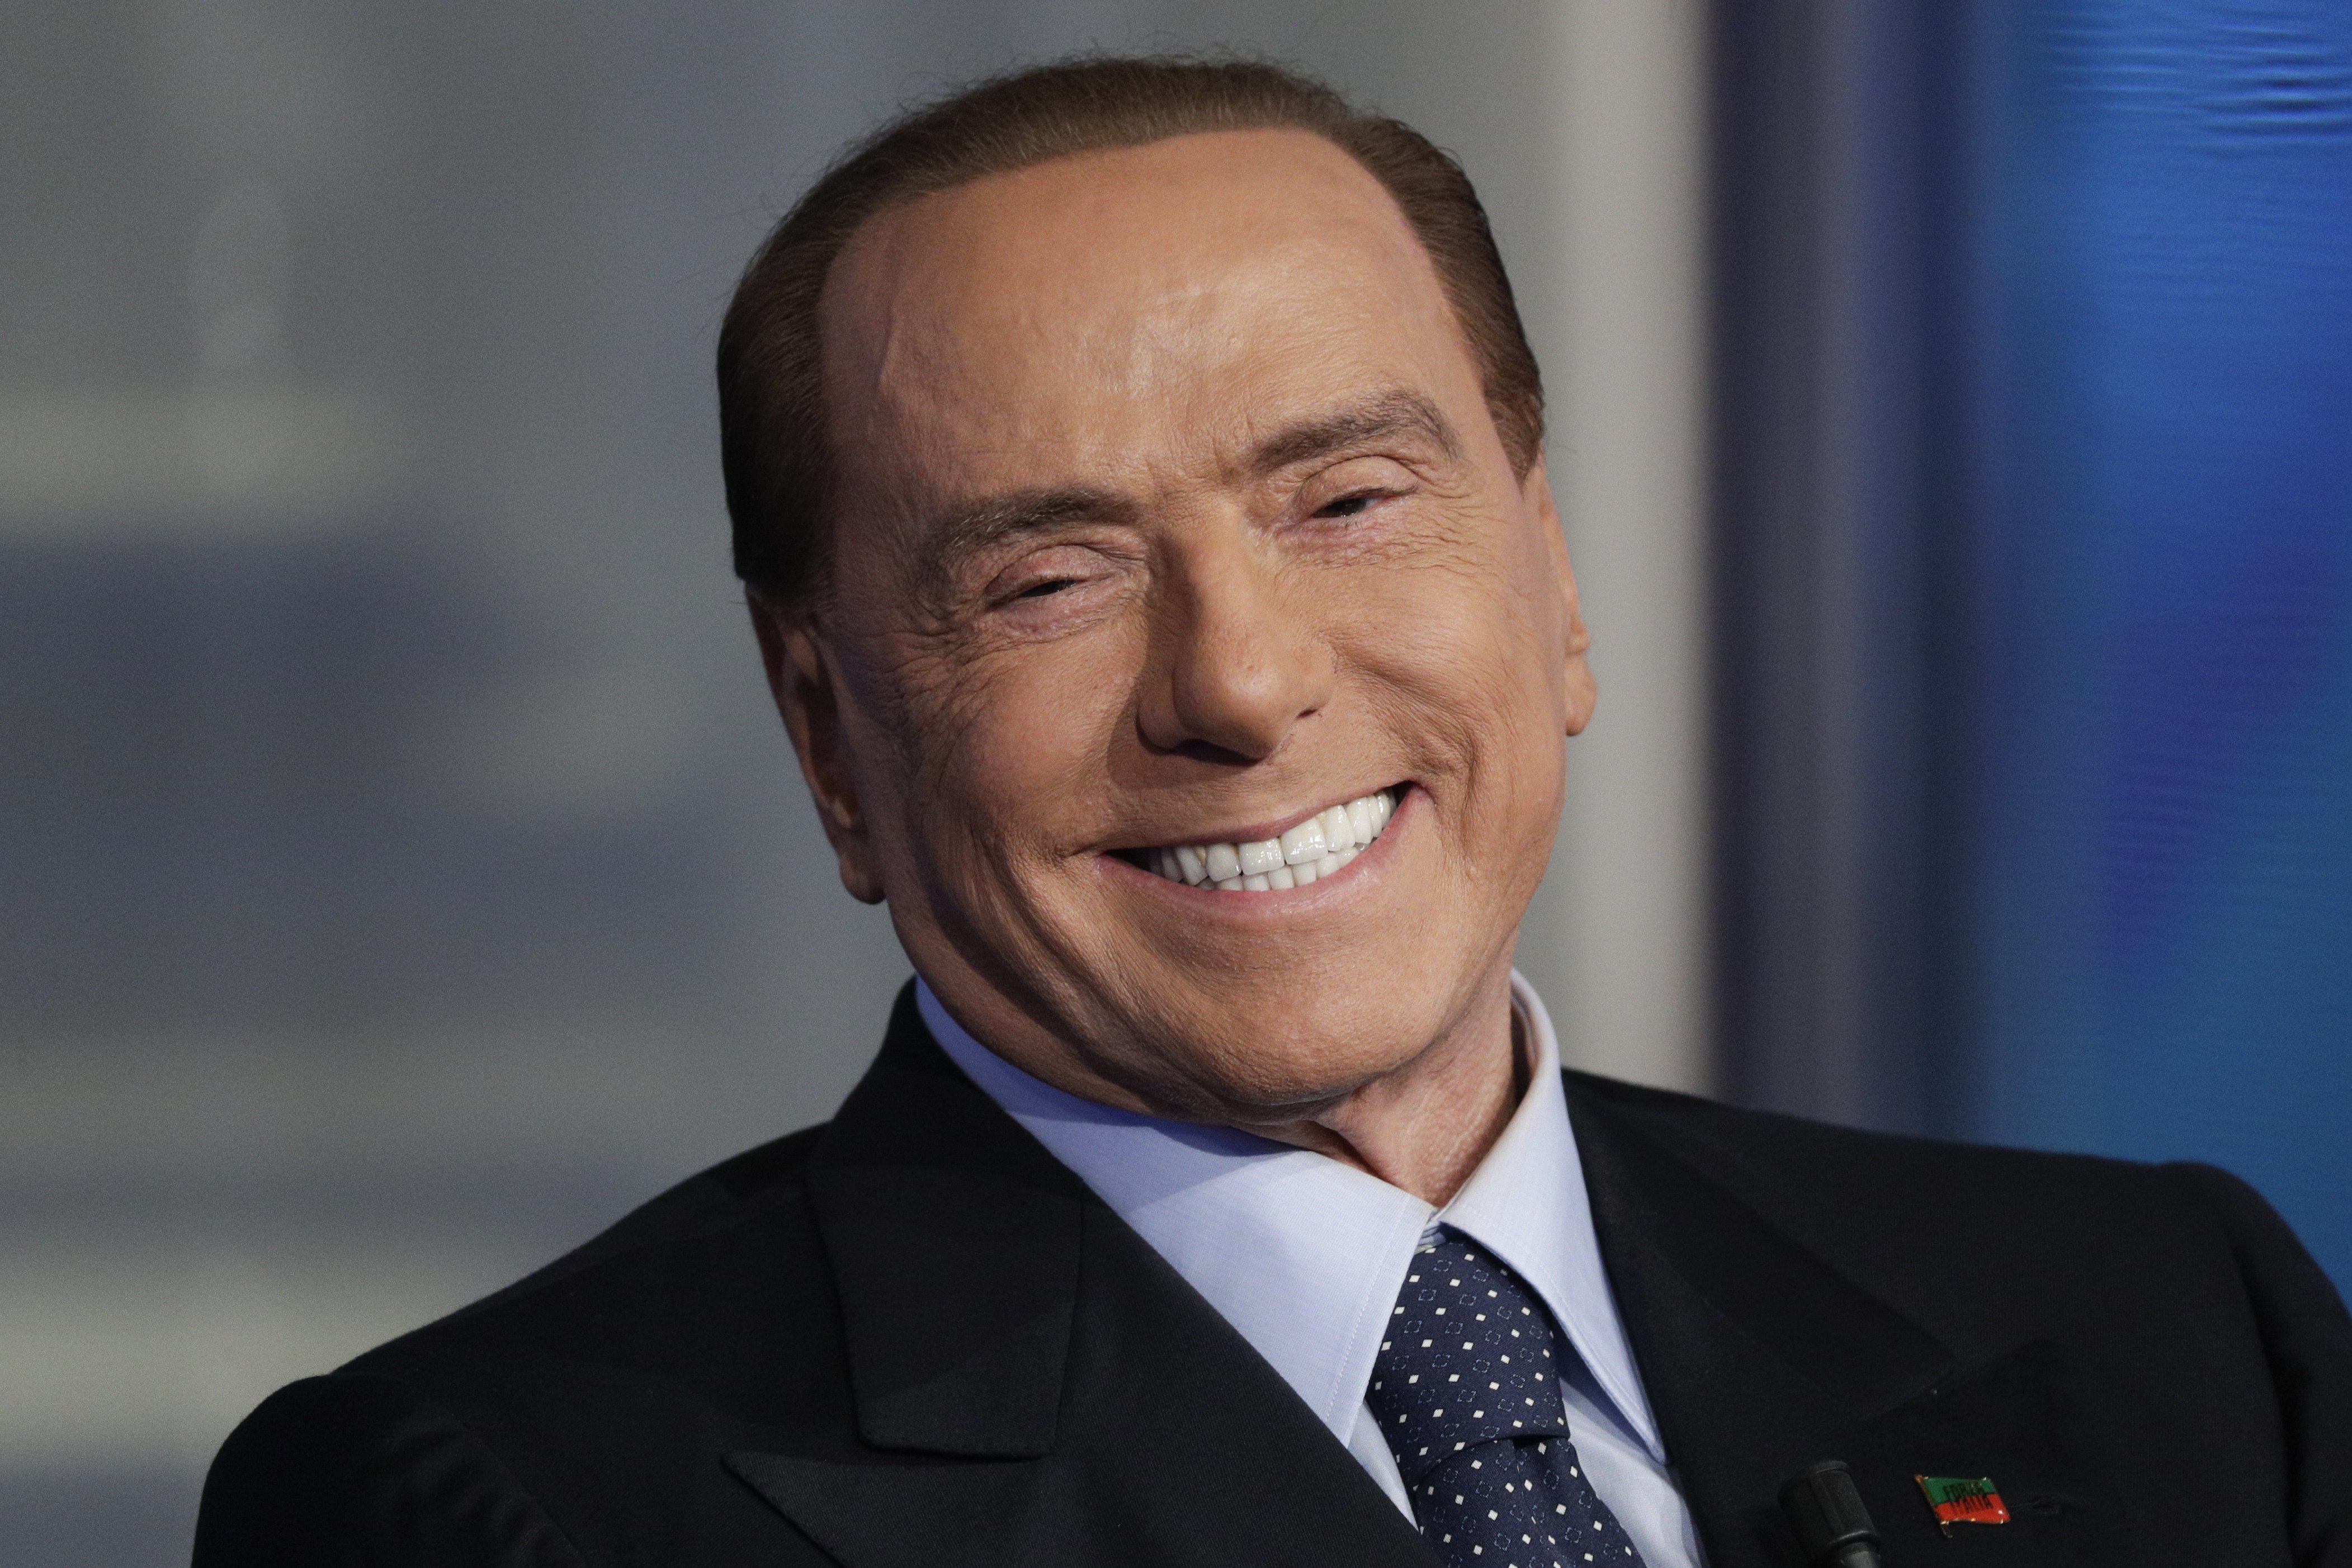 Centrodestra, parla Silvio Berlusconi: “Ci dobbiamo distinguere per l’equilibrio, la serietà e la coerenza delle sue proposte, non per le sue questioni interne”